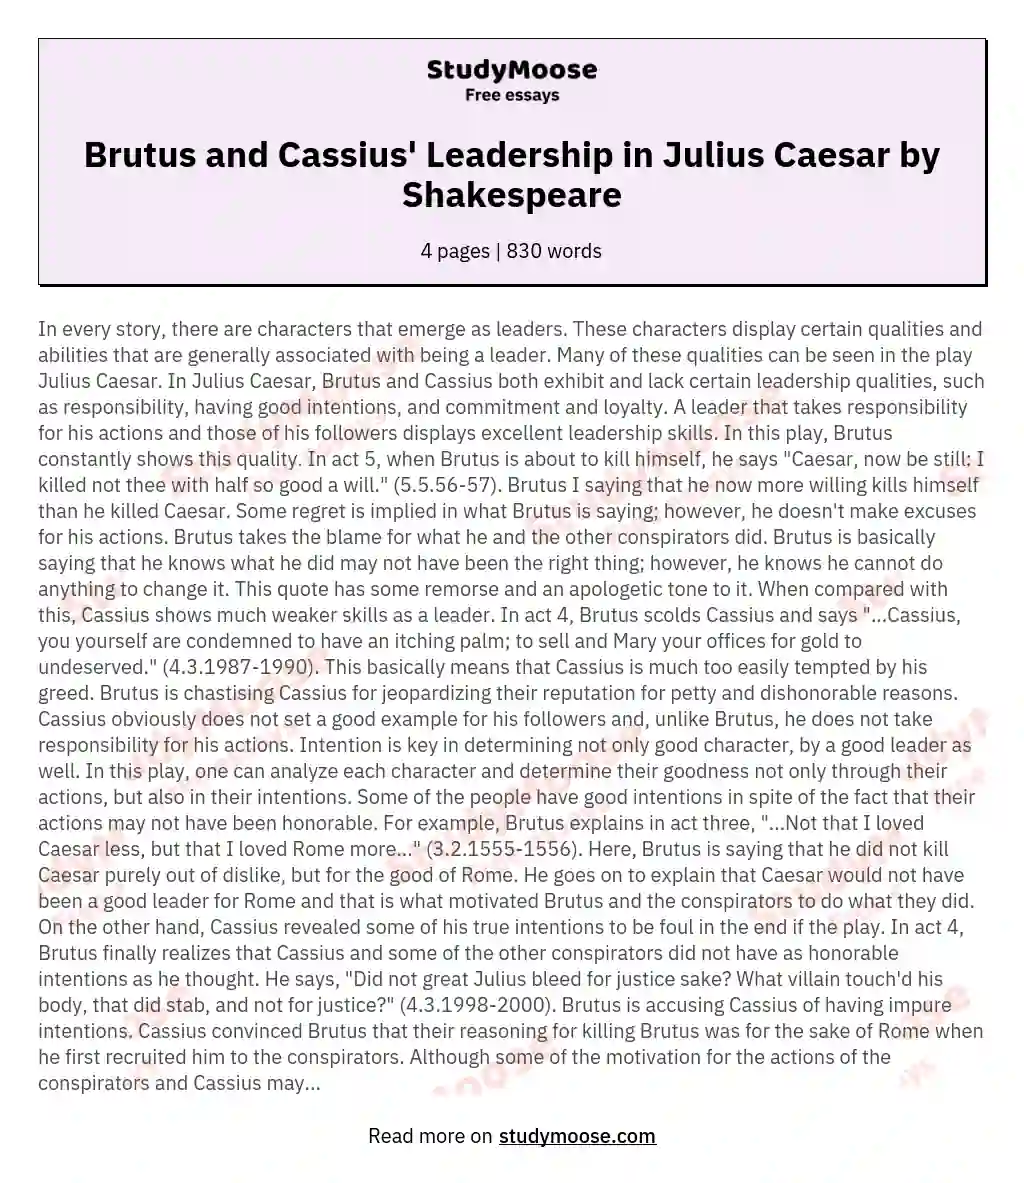 Brutus and Cassius' Leadership in Julius Caesar by Shakespeare essay